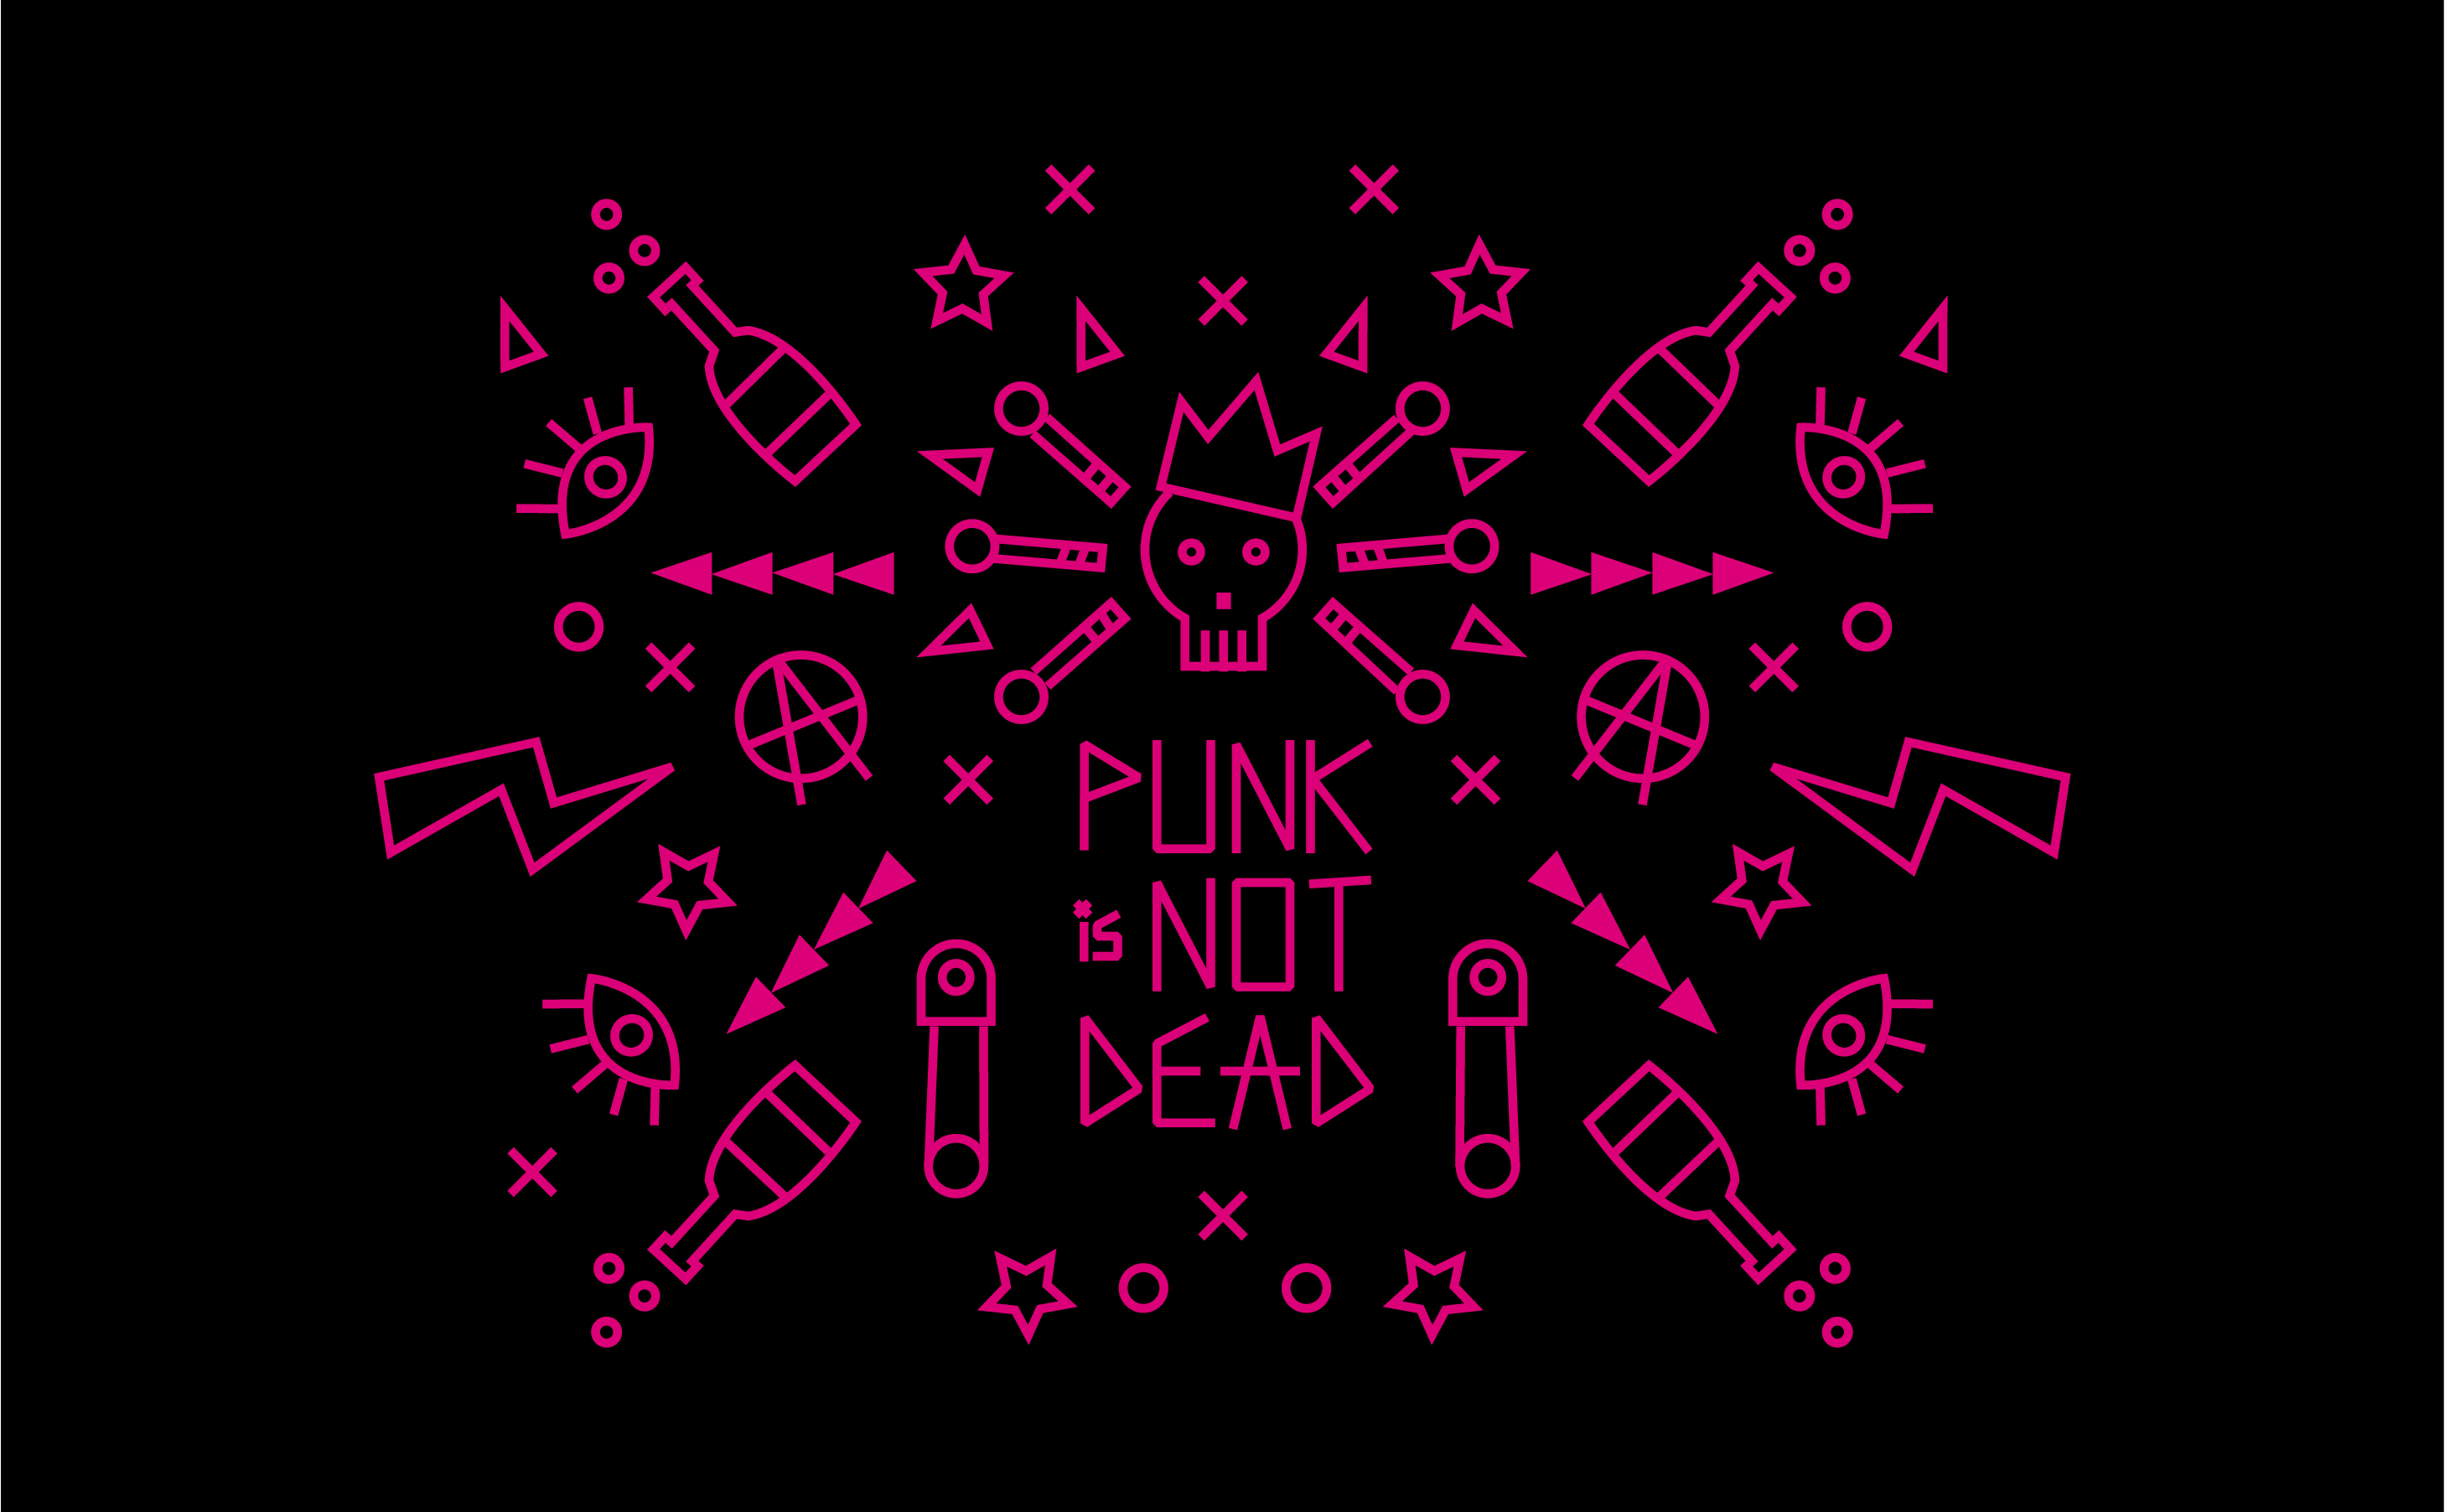 Punk is not dead